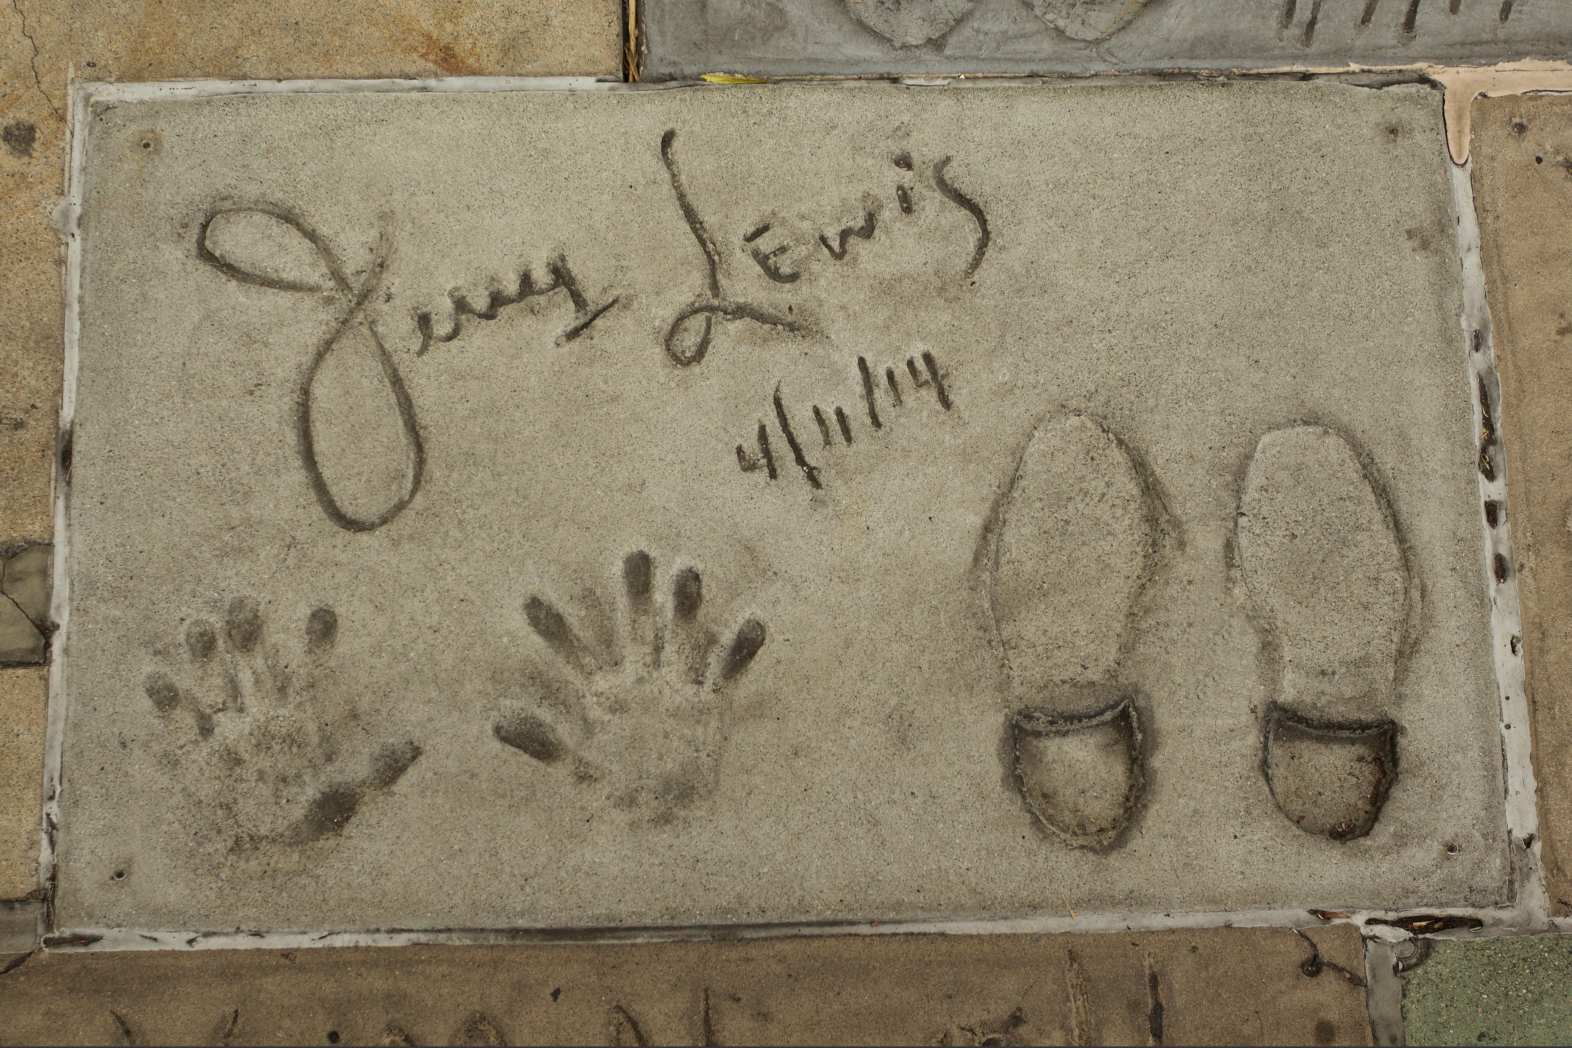 Се појави импровизиран споменик за починатиот комичар, актер и легендарен забавувач Џери Луис околу неговите отпечатоци од рацете и нозете на Булеварот на славните во Холивуд во Лос Анџелес, кога тој почина во 2017 година.